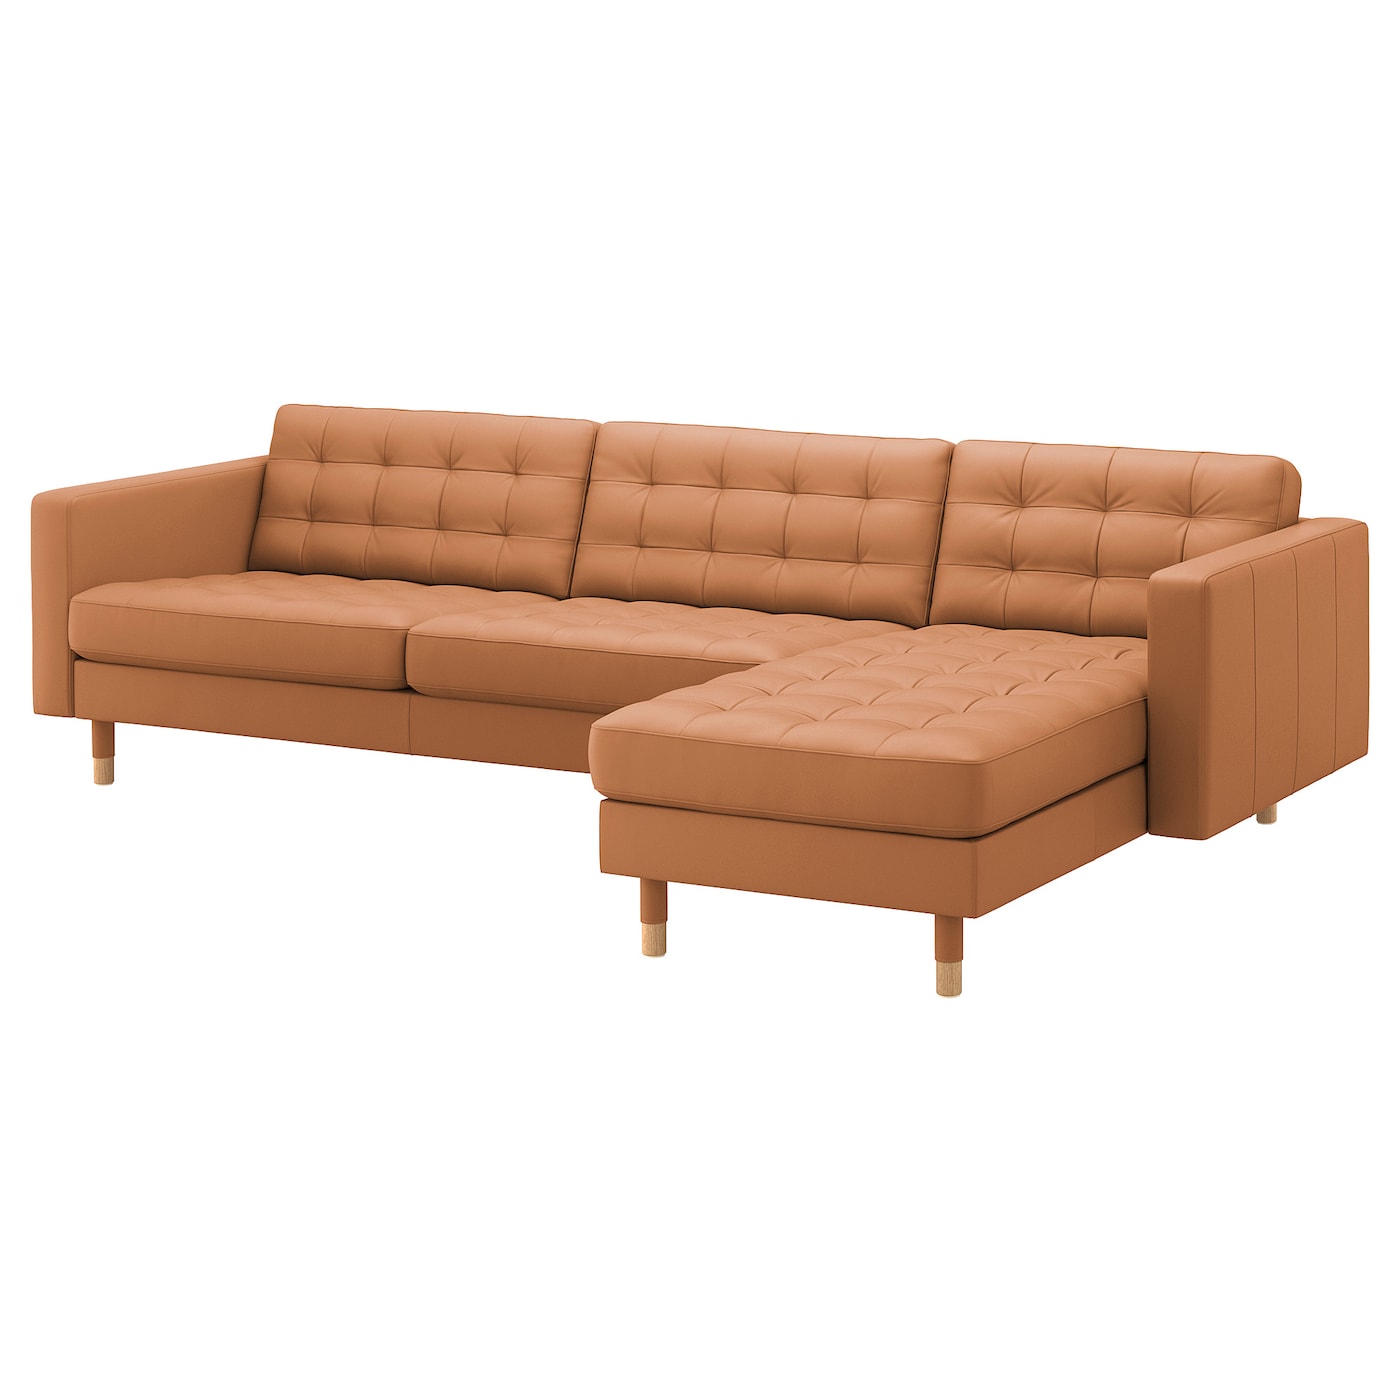 4-местный диван с шезлонгом - IKEA LANDSKRONA, 280х89х78 см, оранжевый, кожа, ЛАНДСКРУНА ИКЕА